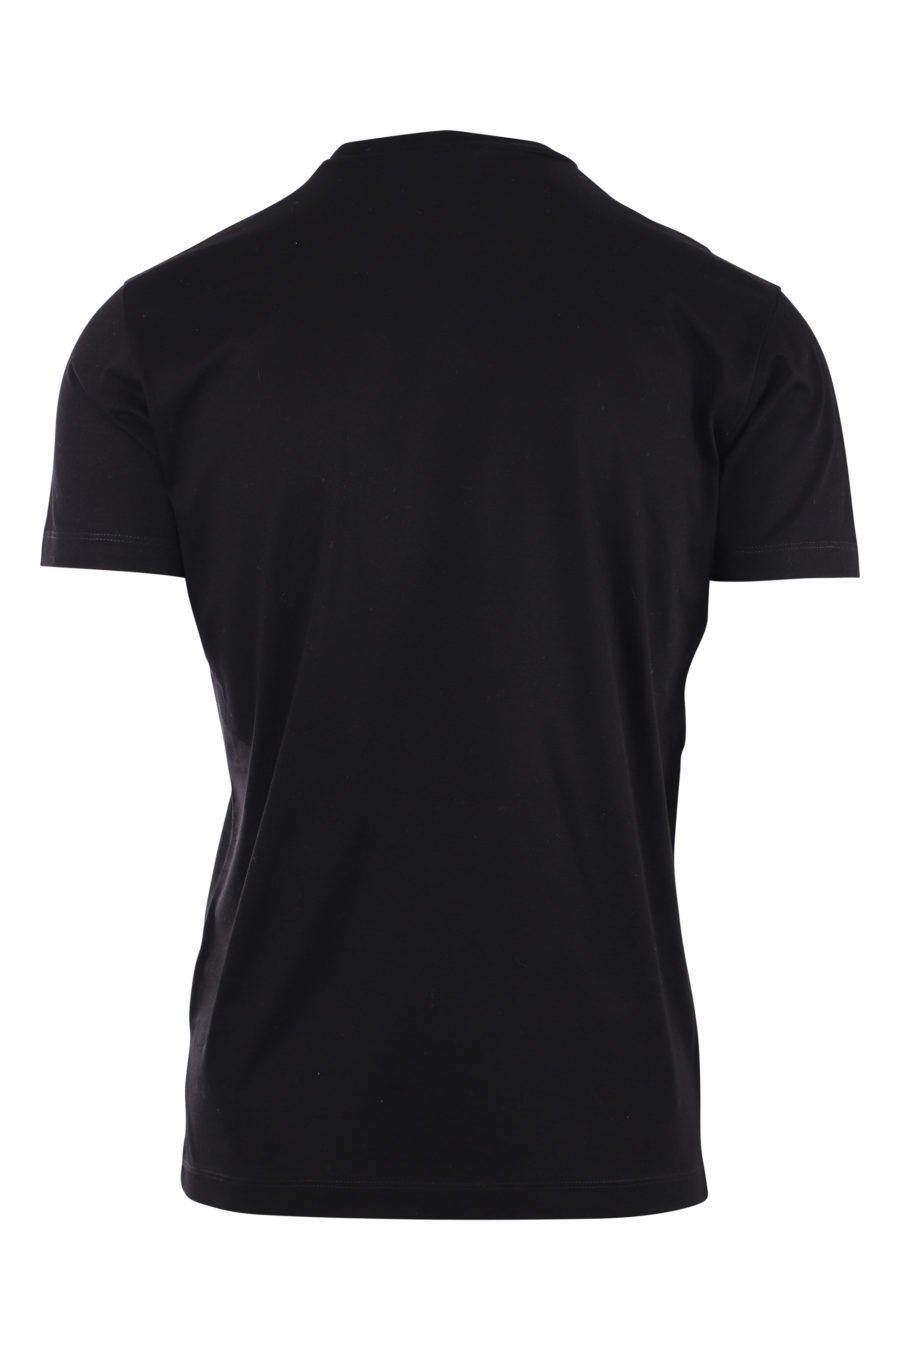 Camiseta negra con logo planeta "globetrotter" - IMG 9722